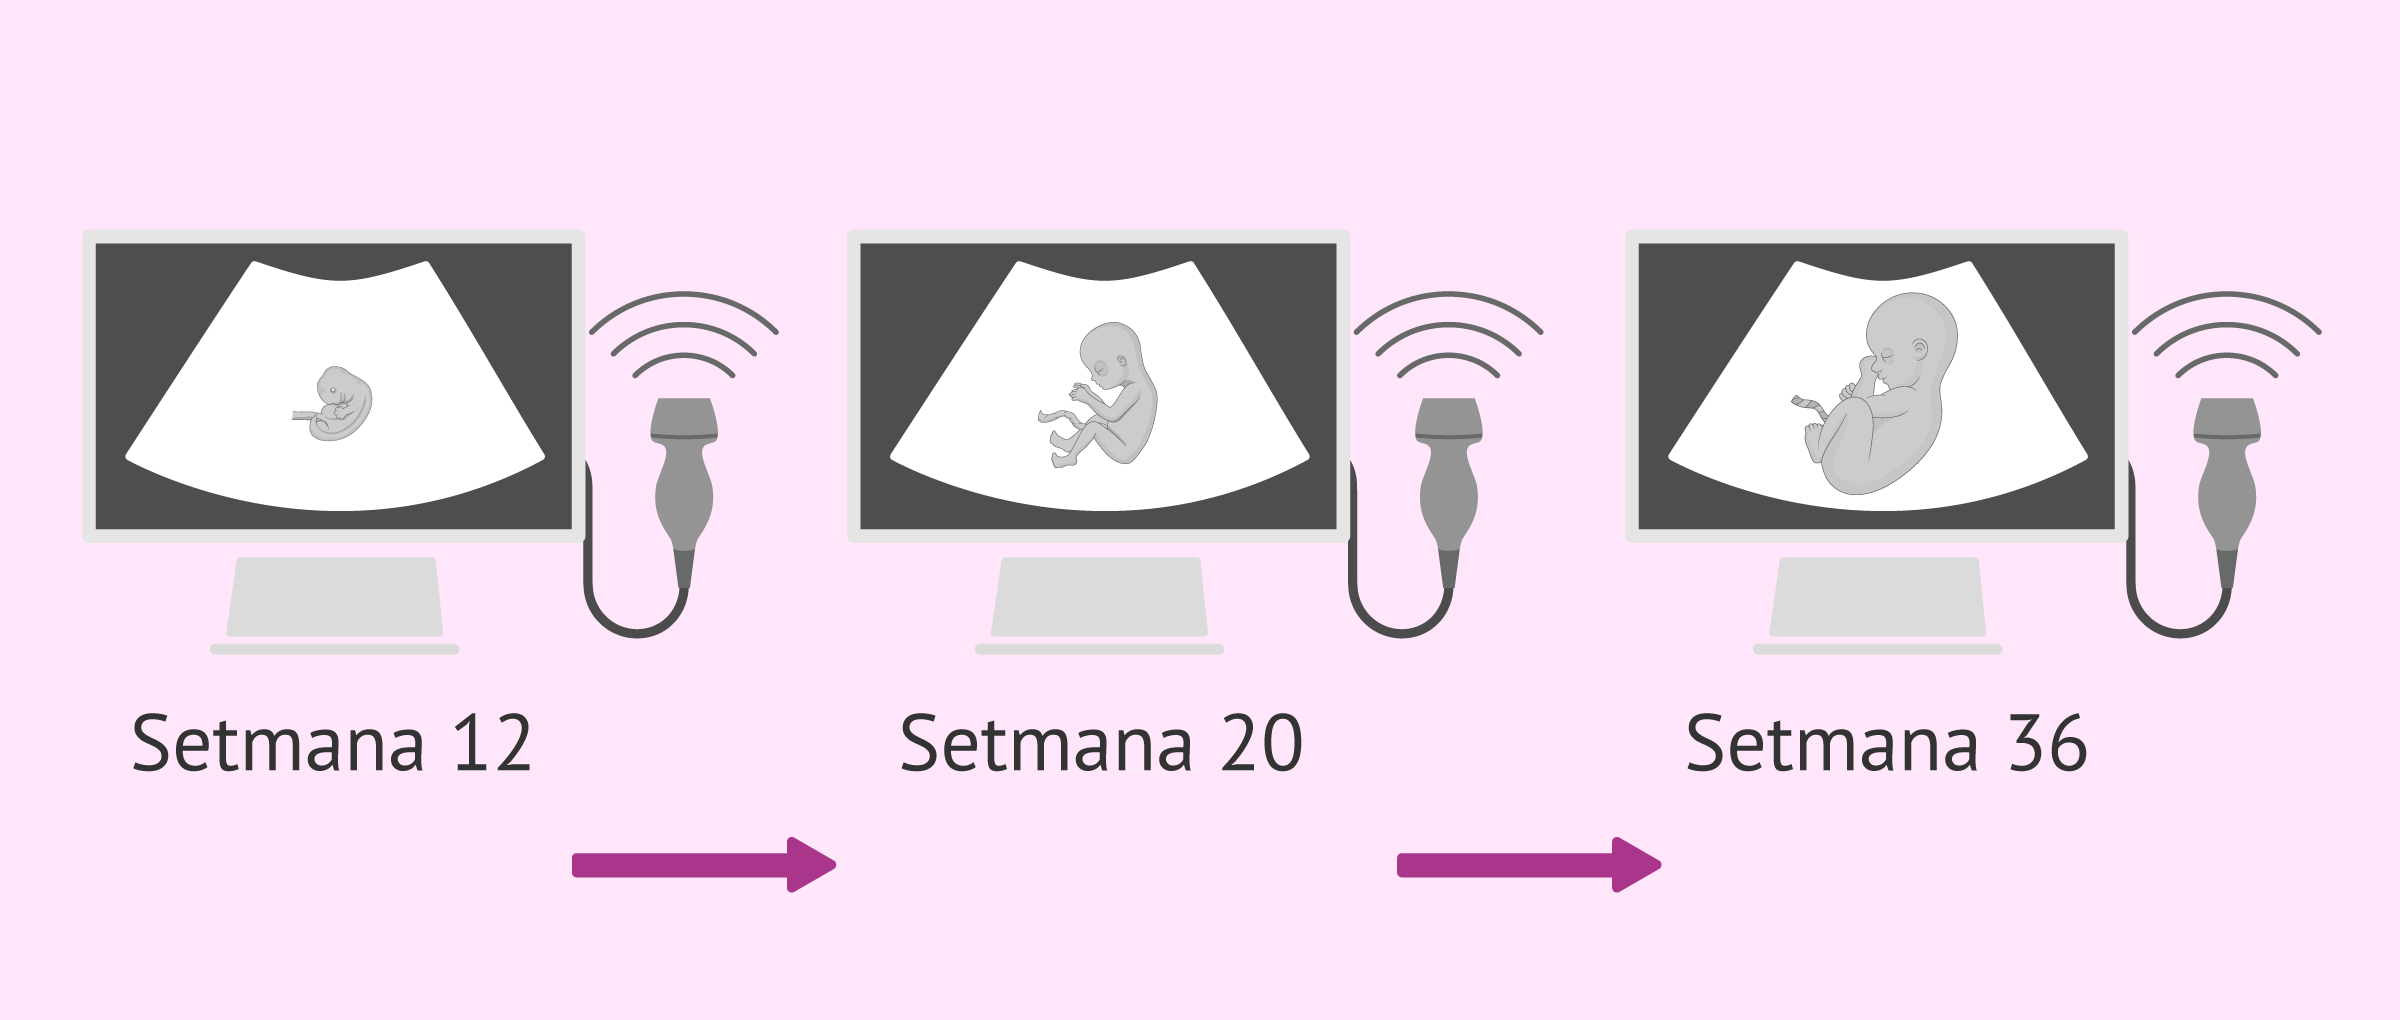 Ecografies del fetus durant l'embaràs